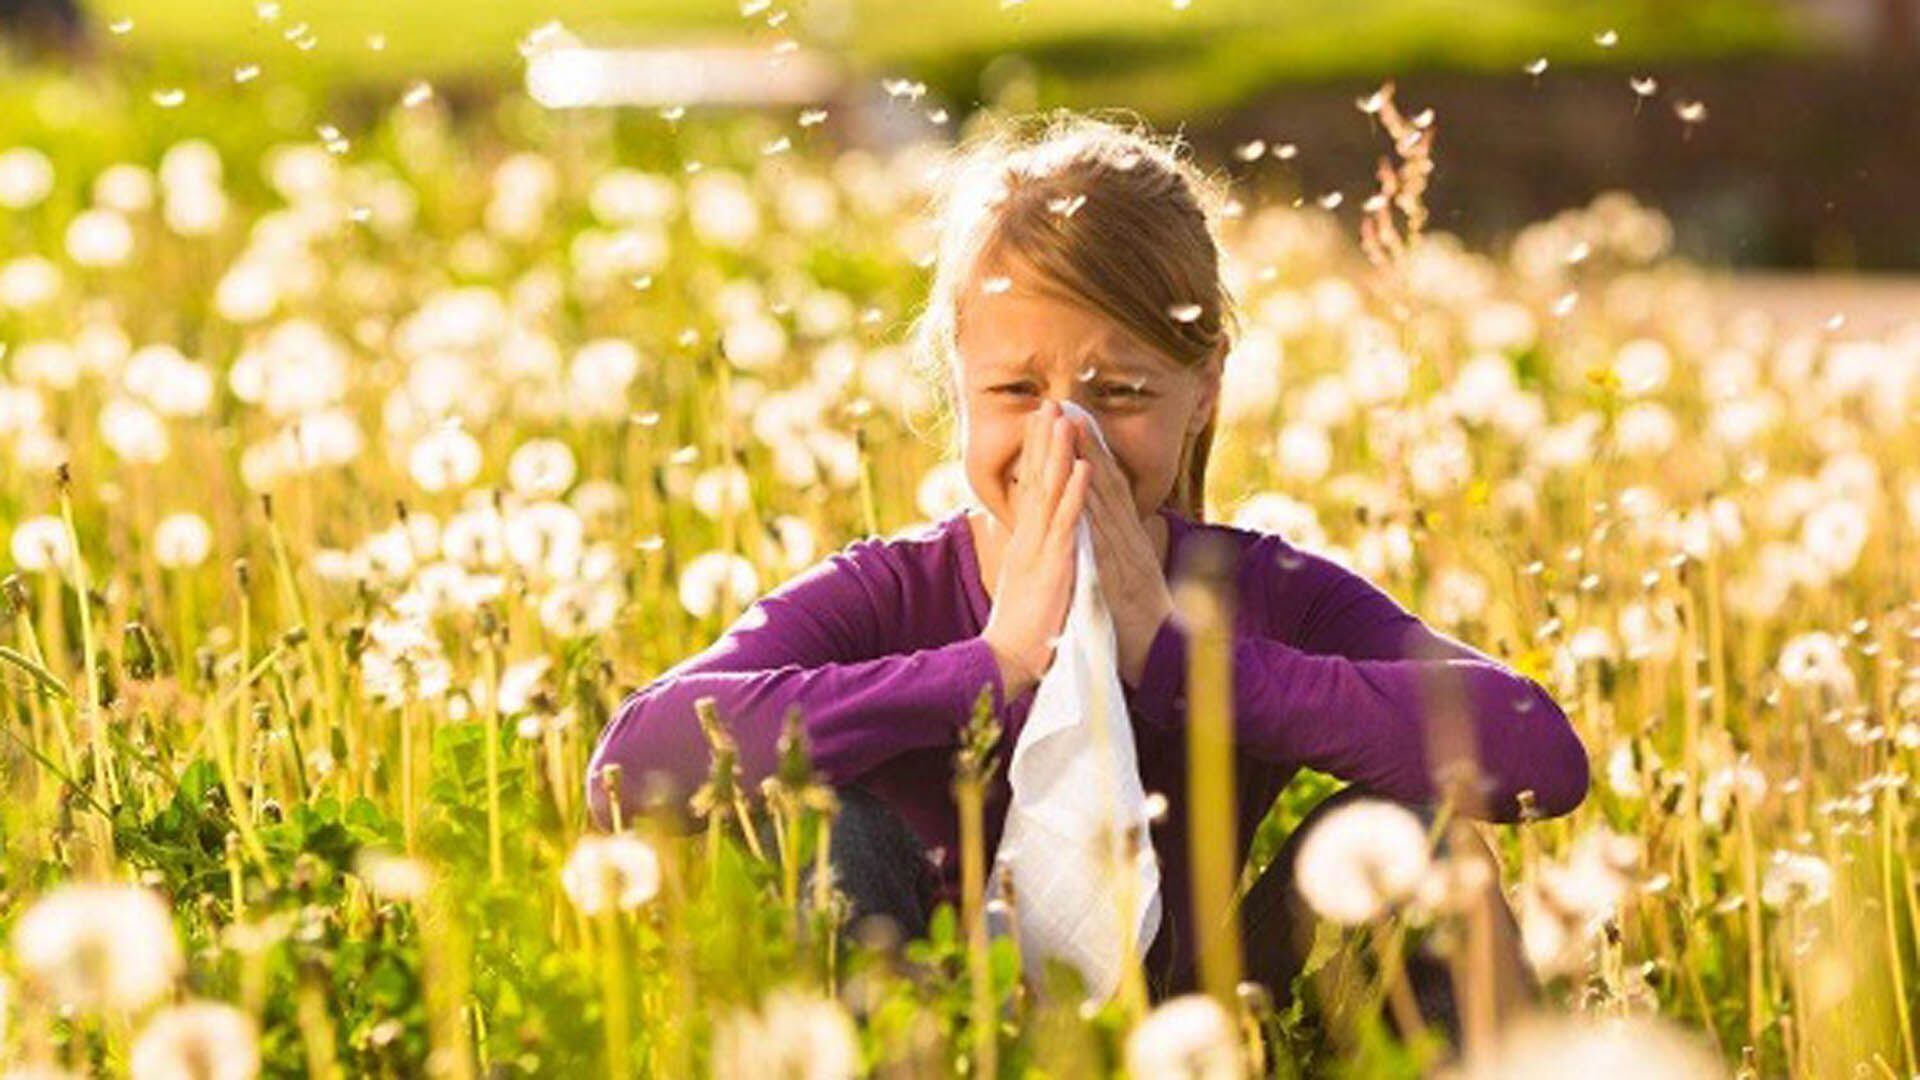 Los síntomas ocurren en respuesta al contacto con el alérgeno y aparecen de manera inmediata con picor de nariz, ojos y paladar, estornudos, rinorrea y obstrucción nasal 
(iStock)